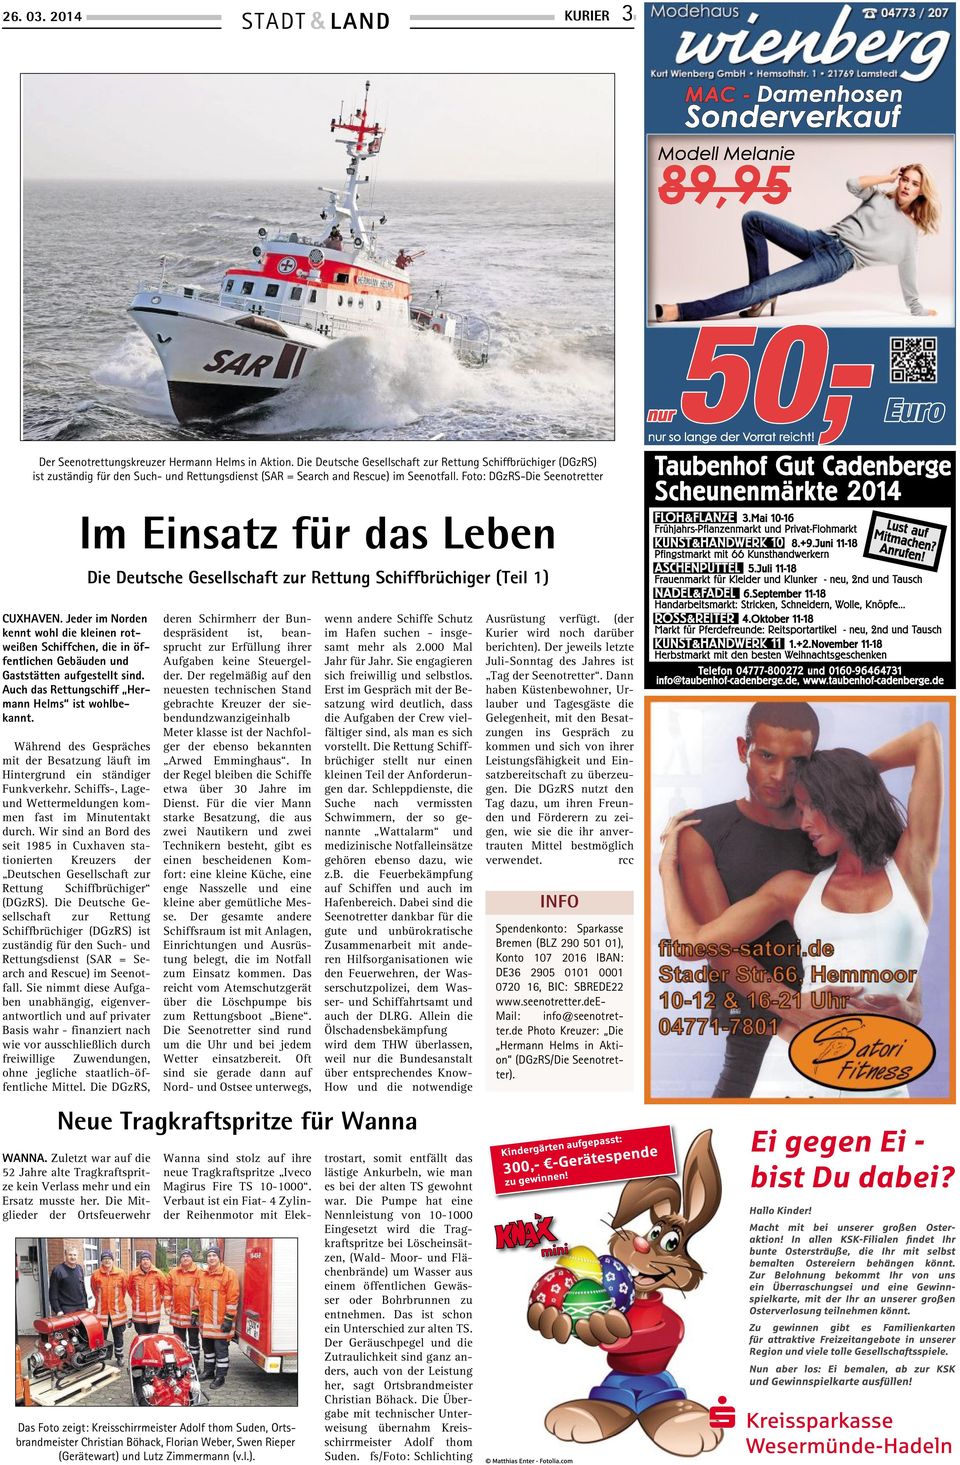 Foto: DGzRS-Die Seenotretter Im Einsatz für das Leben Die Deutsche Gesellschaft zur Rettung Schiffbrüchiger (Teil 1) CUXHAVEN.